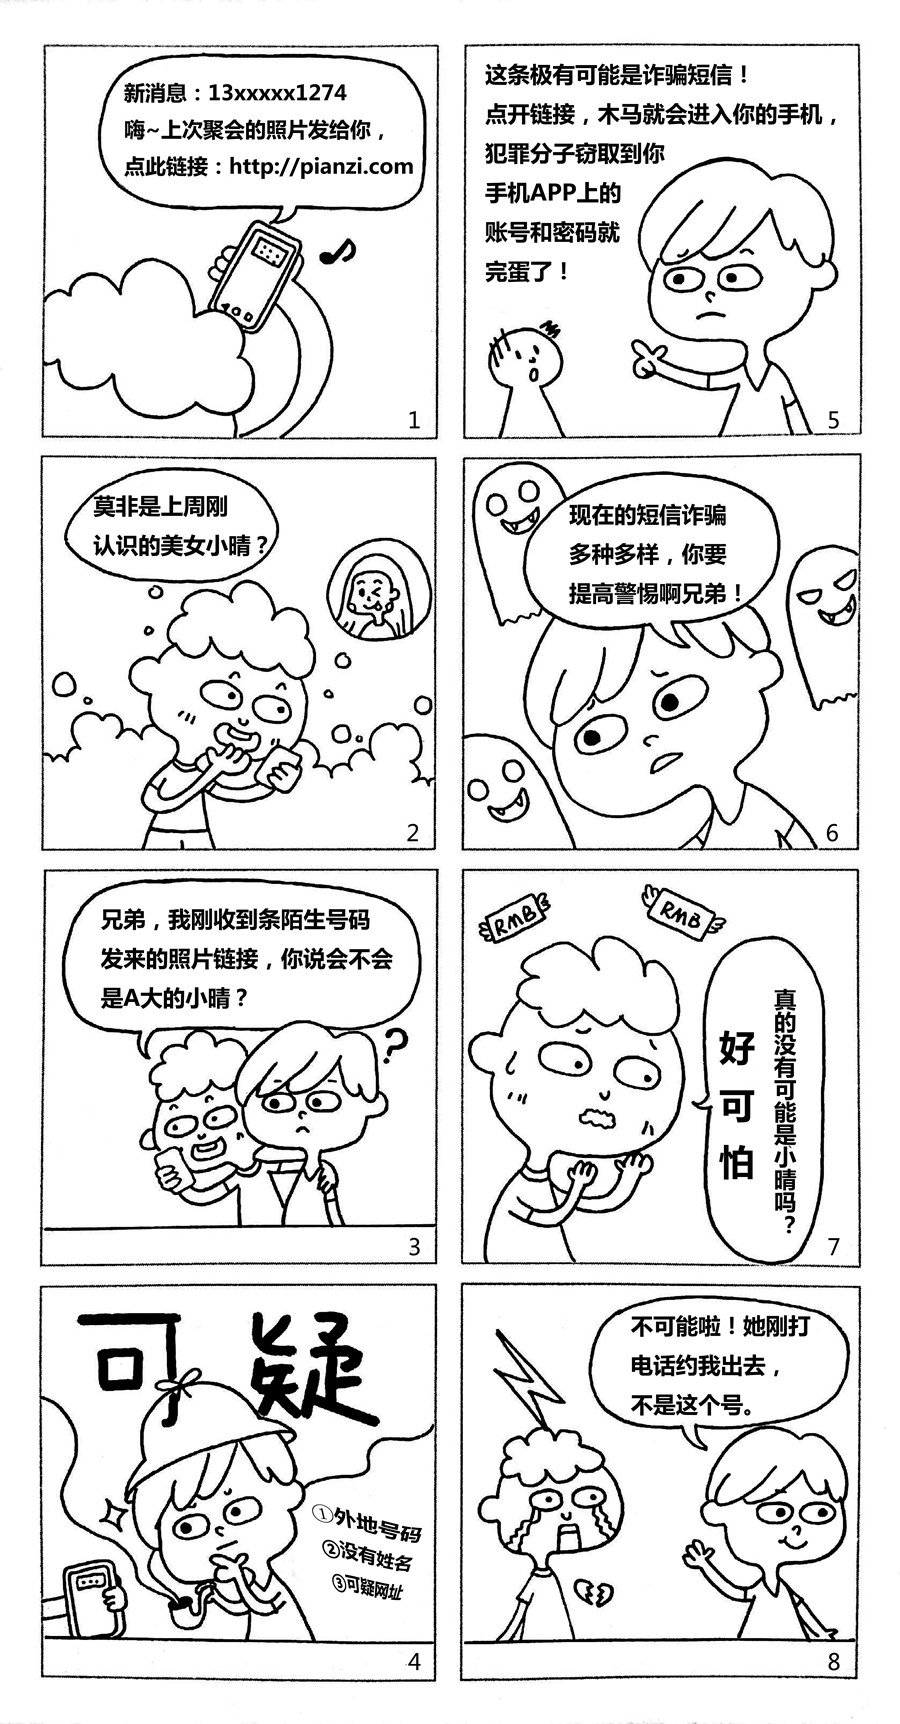 4短信诈骗_副本.jpg